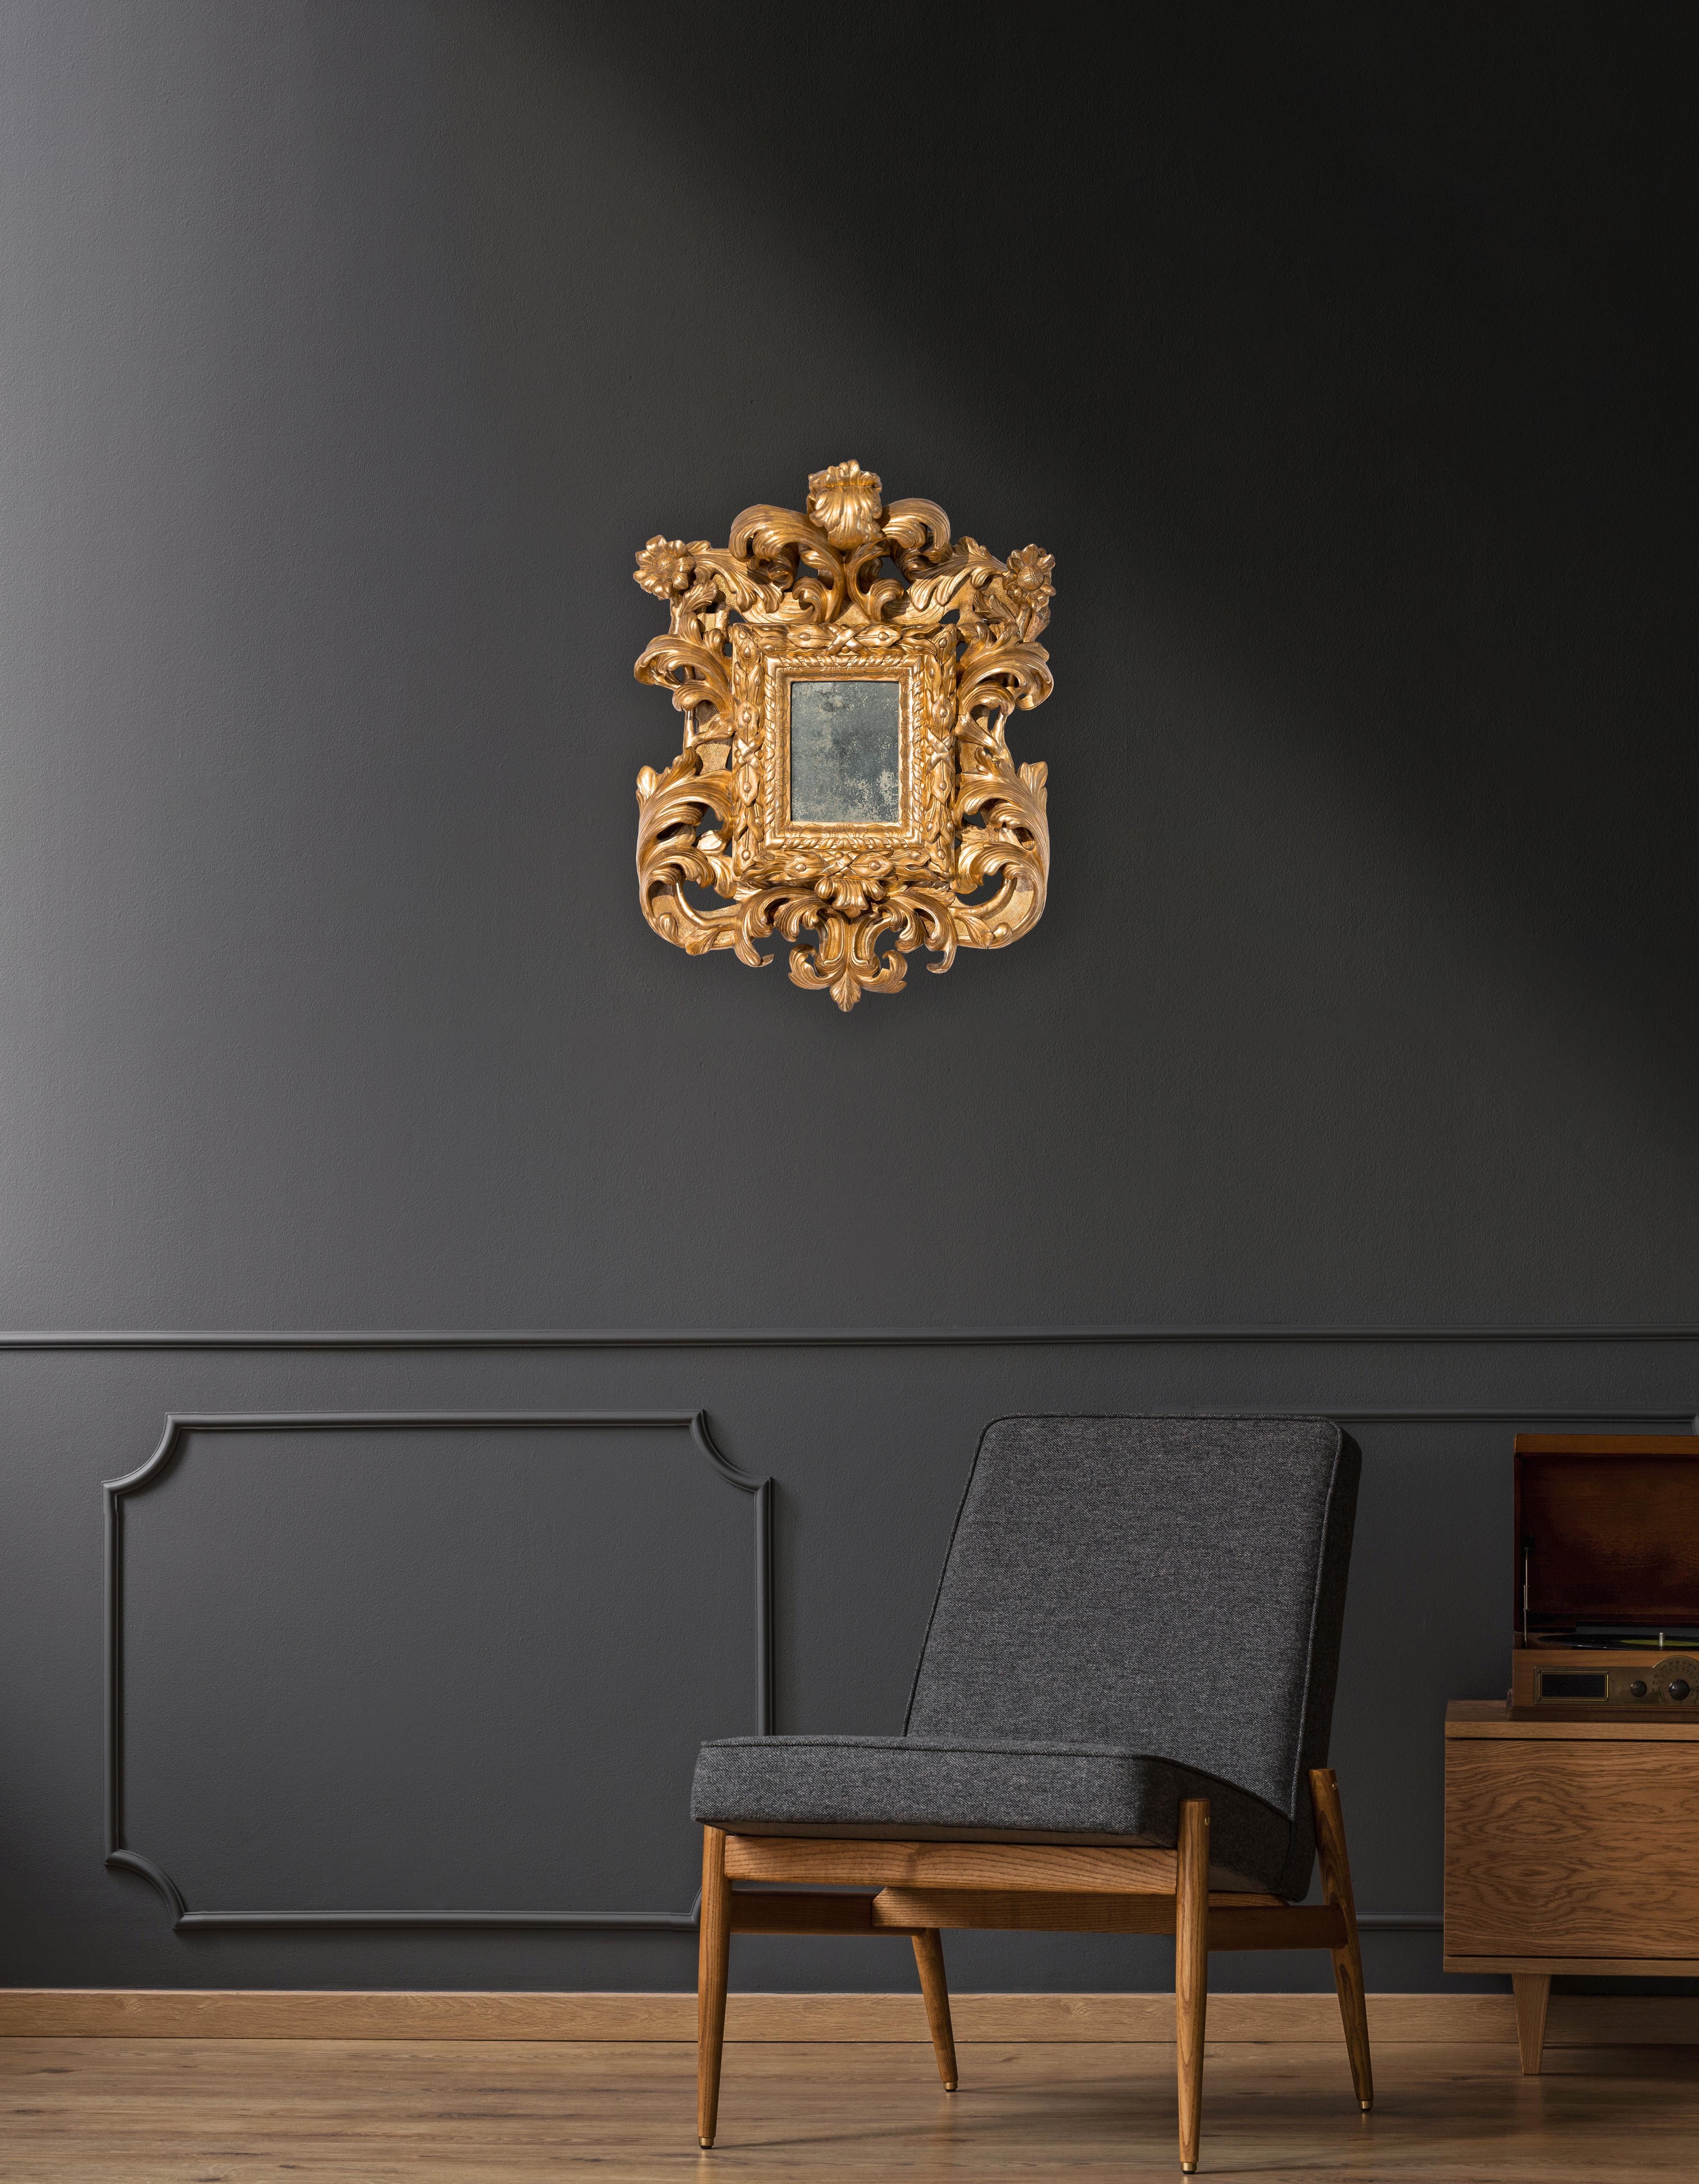 Magnifique miroir en bois doré, Rome, période baroque. Bord intérieur sculpté d'une guirlande de myrte, de palmettes et d'un ruban enroulé. Frises et grandes feuilles d'acanthe torsadées, volutes et fleurs aux angles supérieurs.
Période : Louis XIV